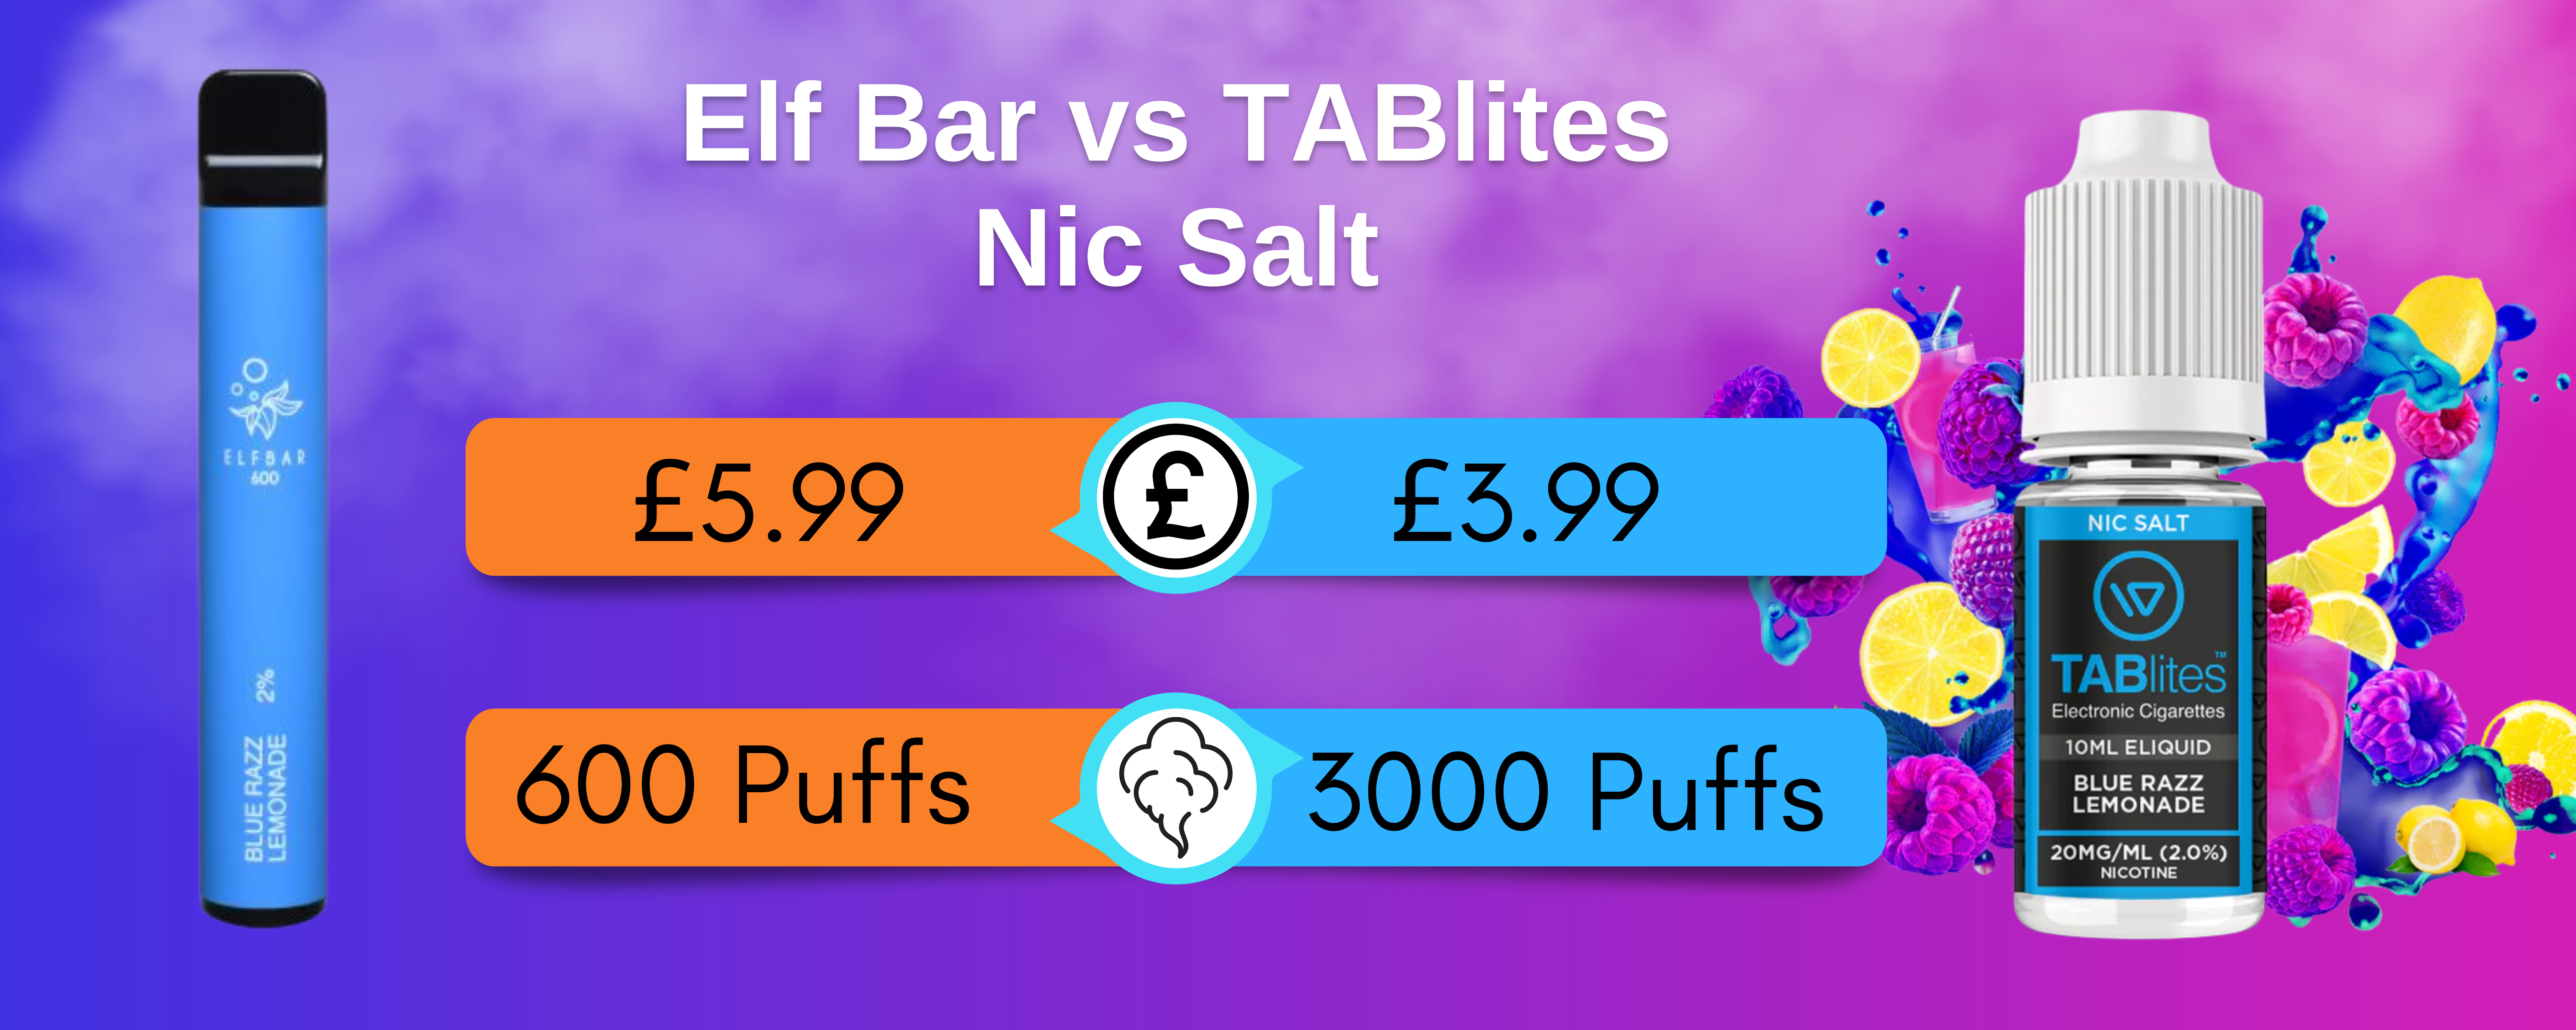 Elf Bar vs TABlites Nic Salt £5.99 £3.99 600 Puffs 3000 Puffs